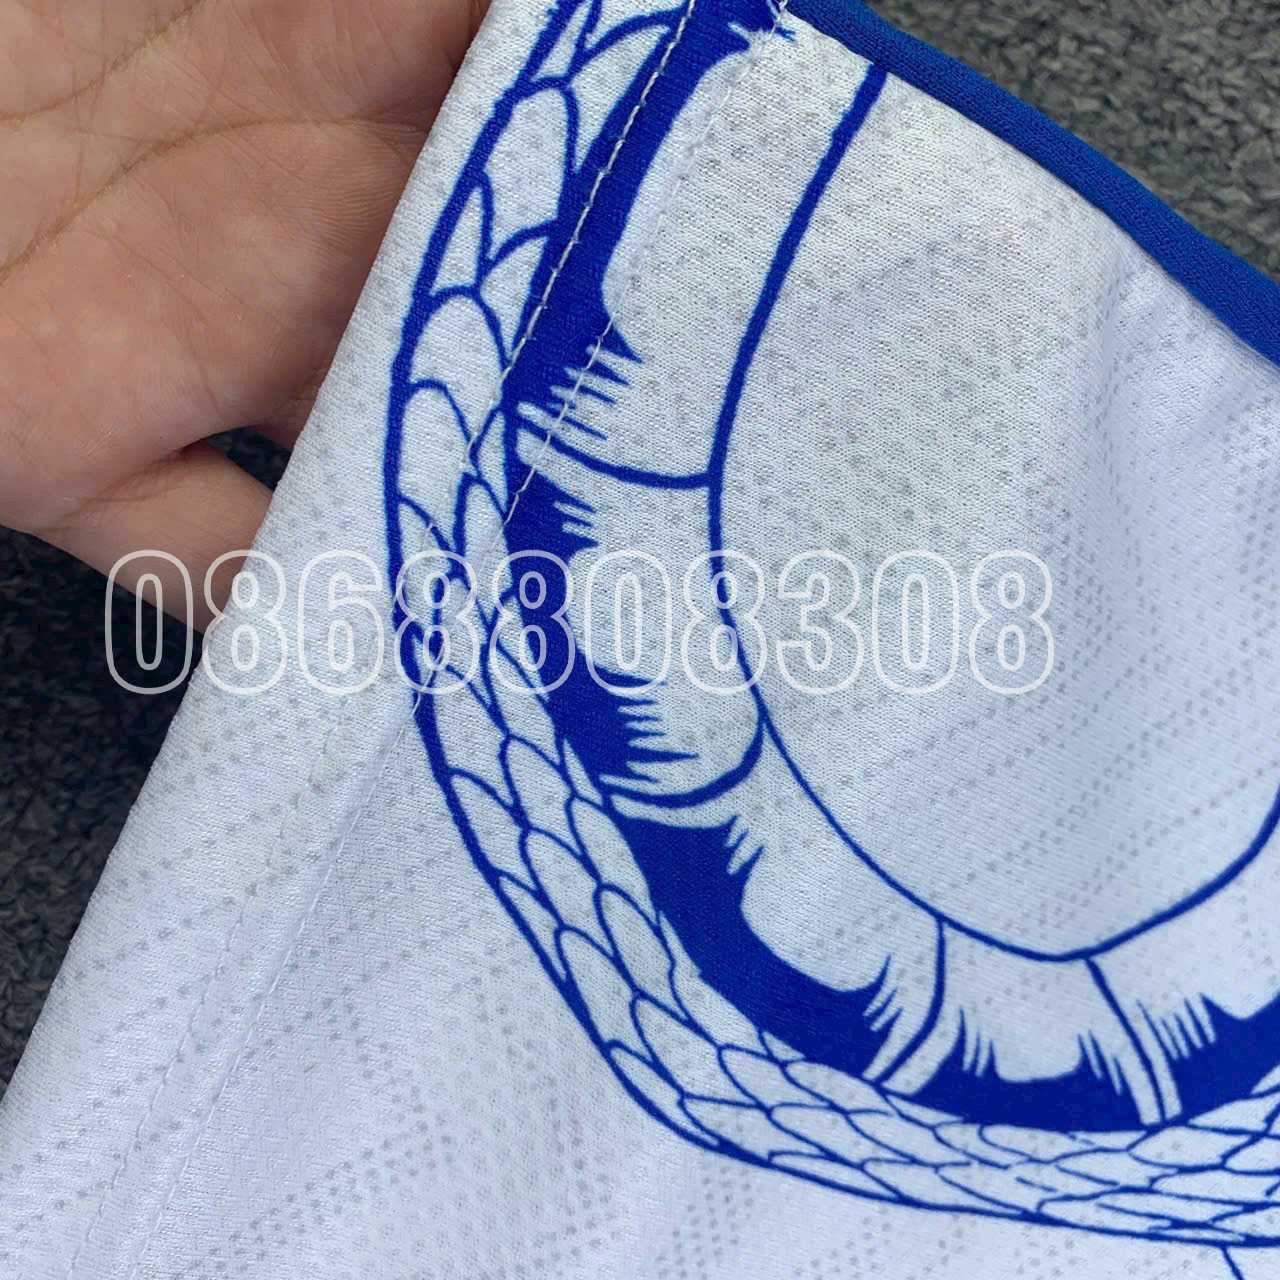 Bộ quần áo đá banh câu lạc bộ bóng đá Inter Milan trắng hoạ tiết Rắn xanh logo thêu vải mè caro thái 1